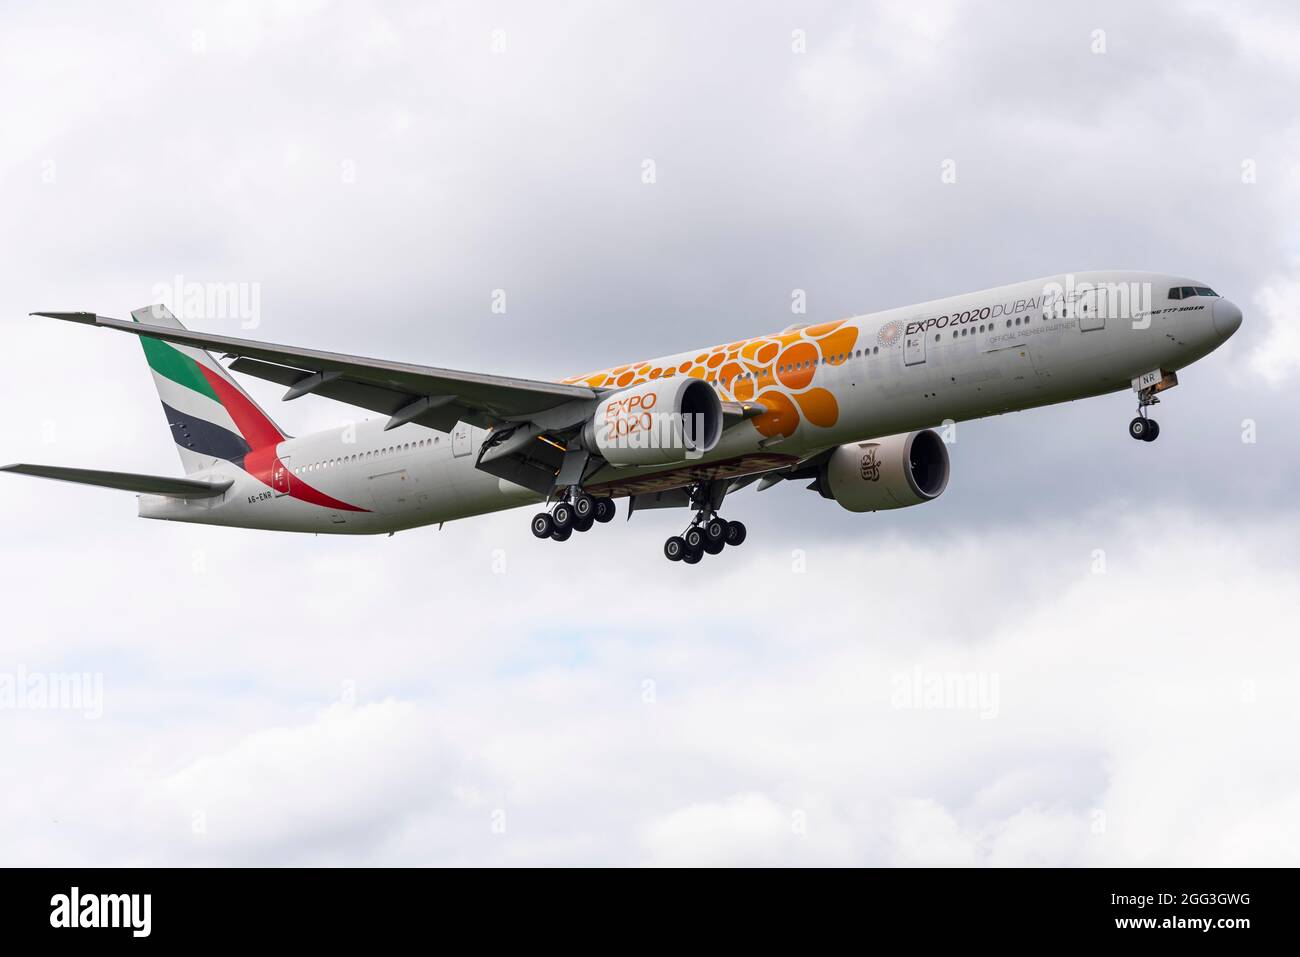 Emirates Boeing 777 Airliner-Düsenflugzeug A6-ENR landet am Flughafen London Heathrow, Großbritannien, mit Werbung für Dubai UAE Expo 2020 Stockfoto